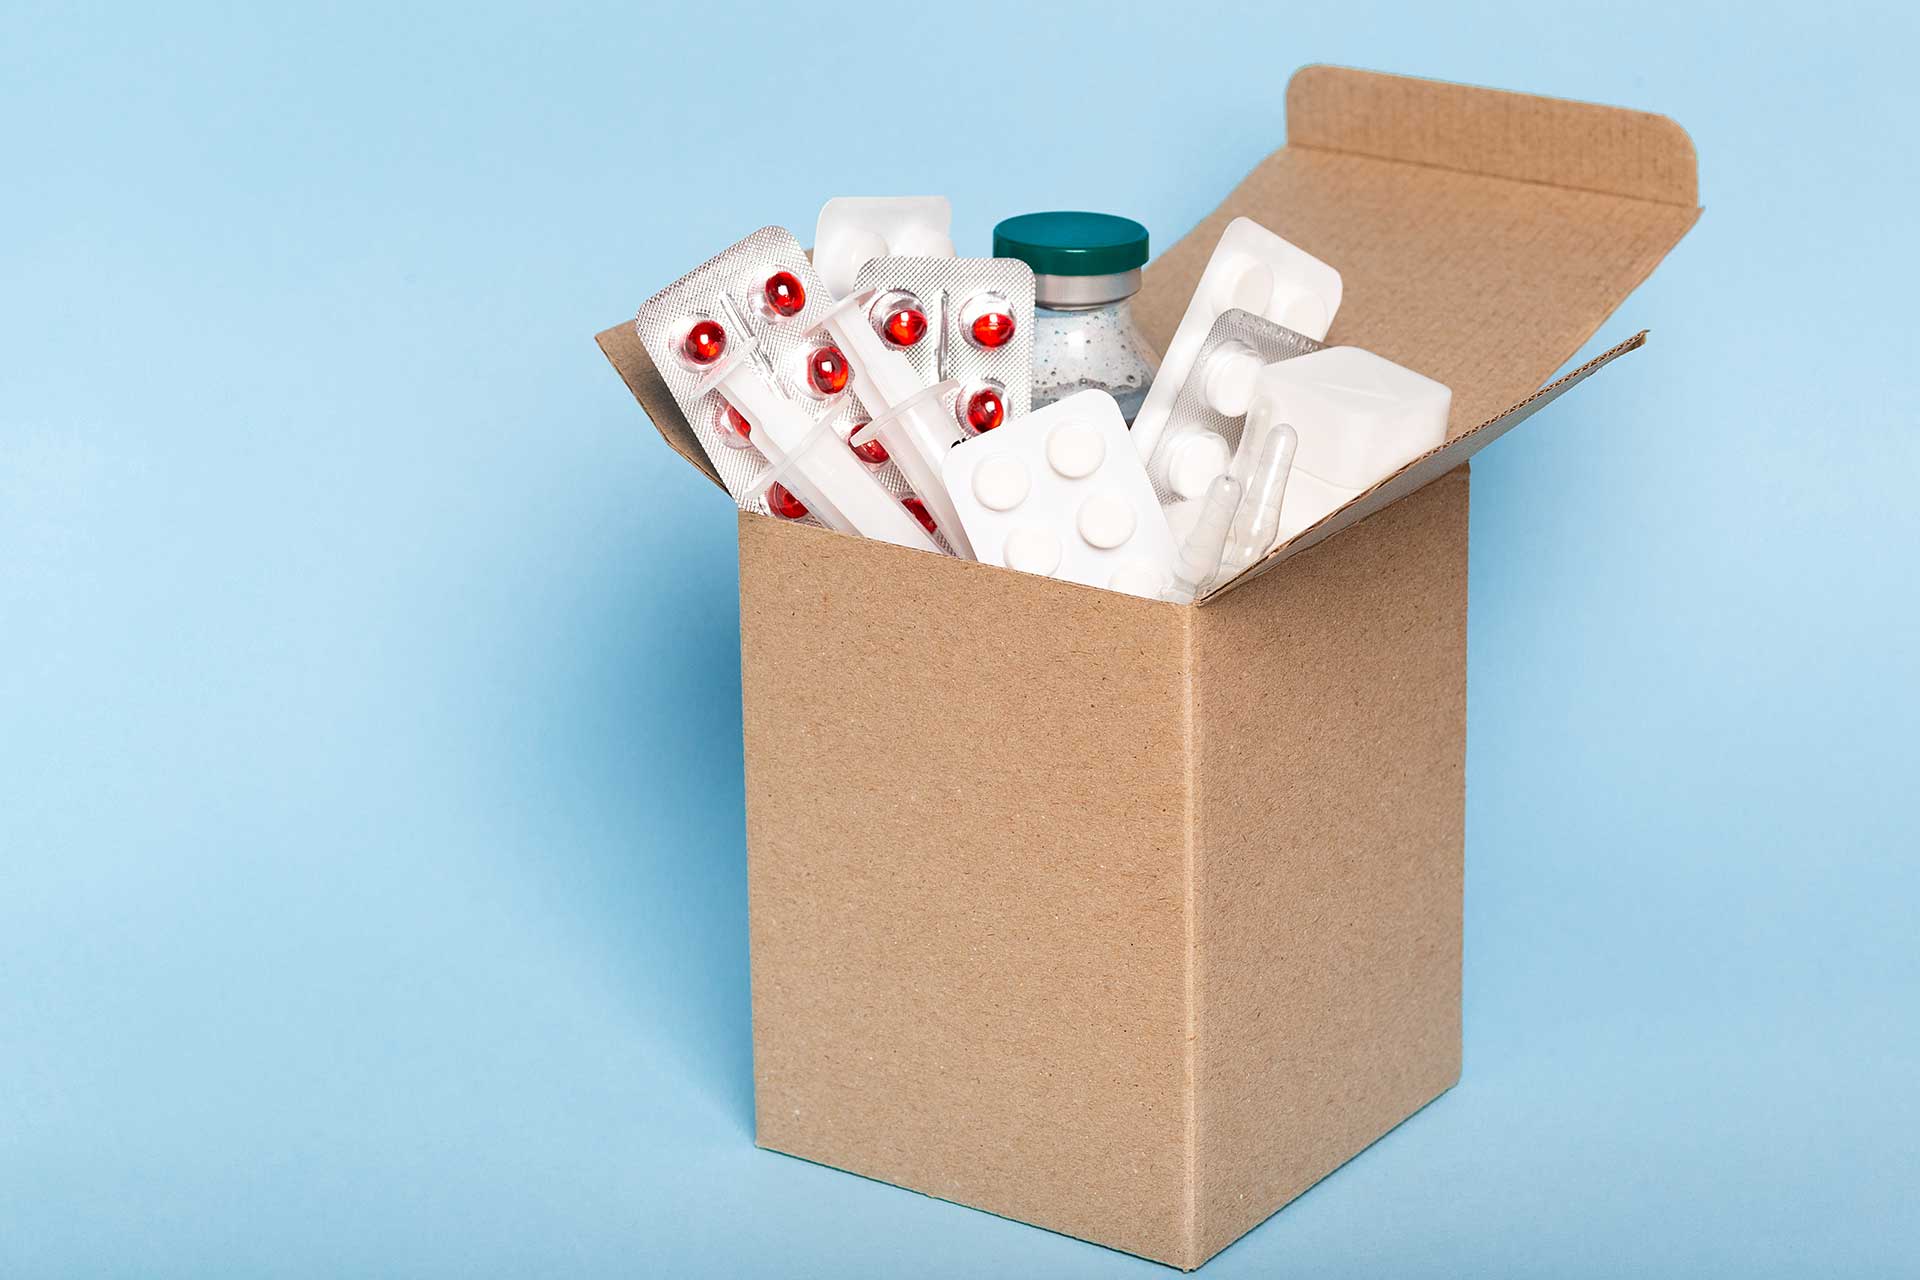  Una caja con píldoras y pastillas entregadas a usuarios gracias a Colsubsidio.